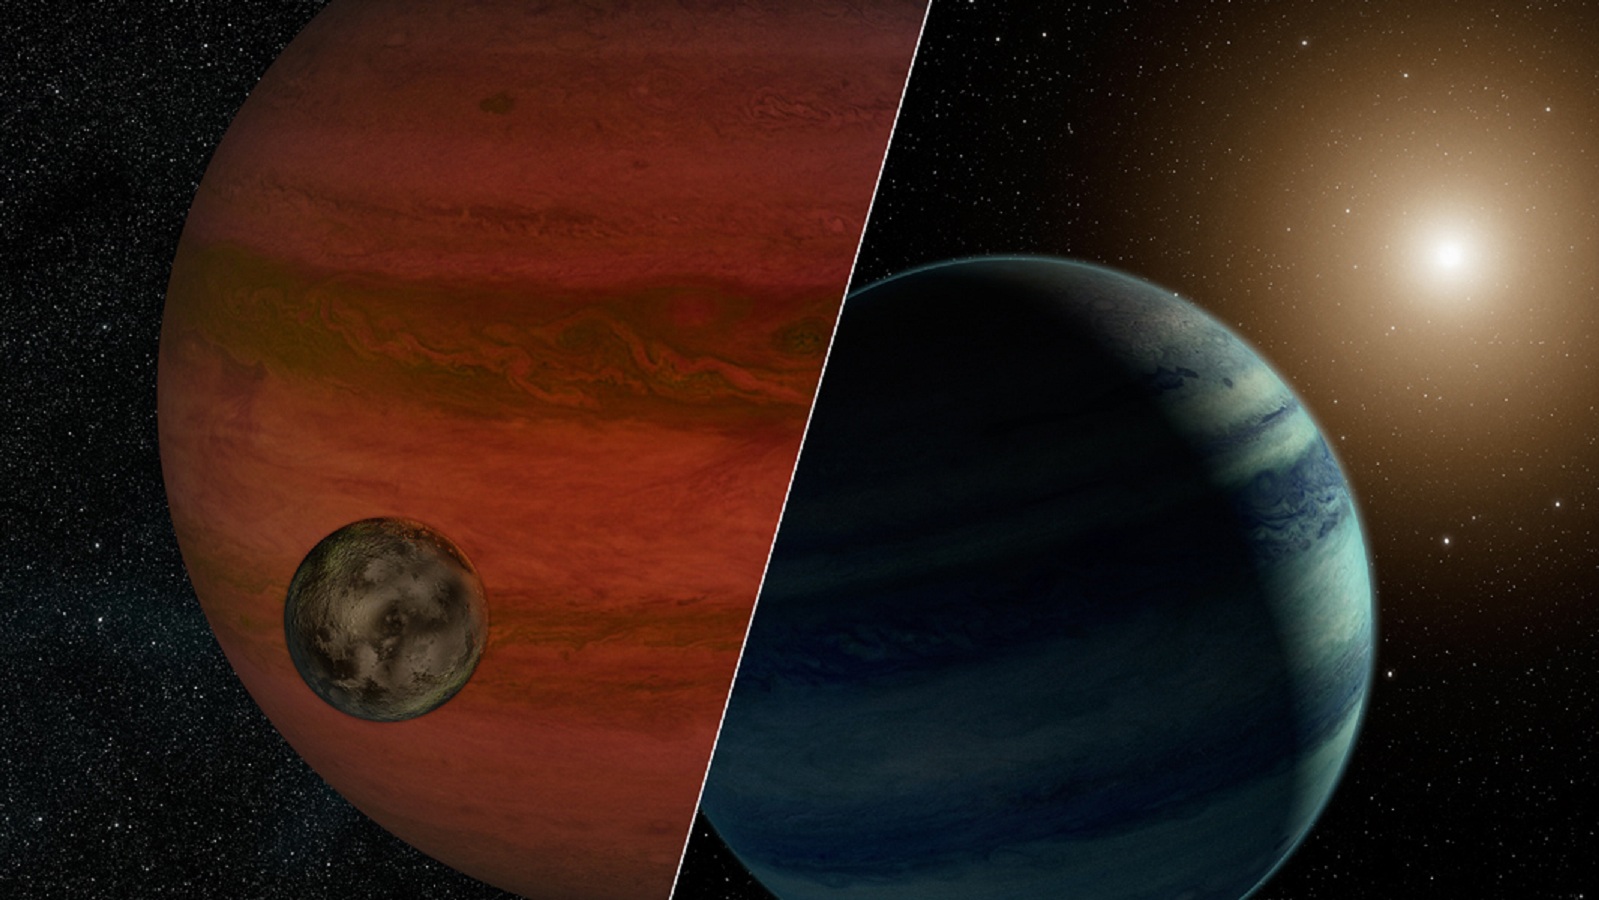 A la izquierda, la exoluna orbitando alrededor del exoplaneta. A la derecha, la exoluna con su estrella al fondo. Fuente: NASA/JPL-Caltech.